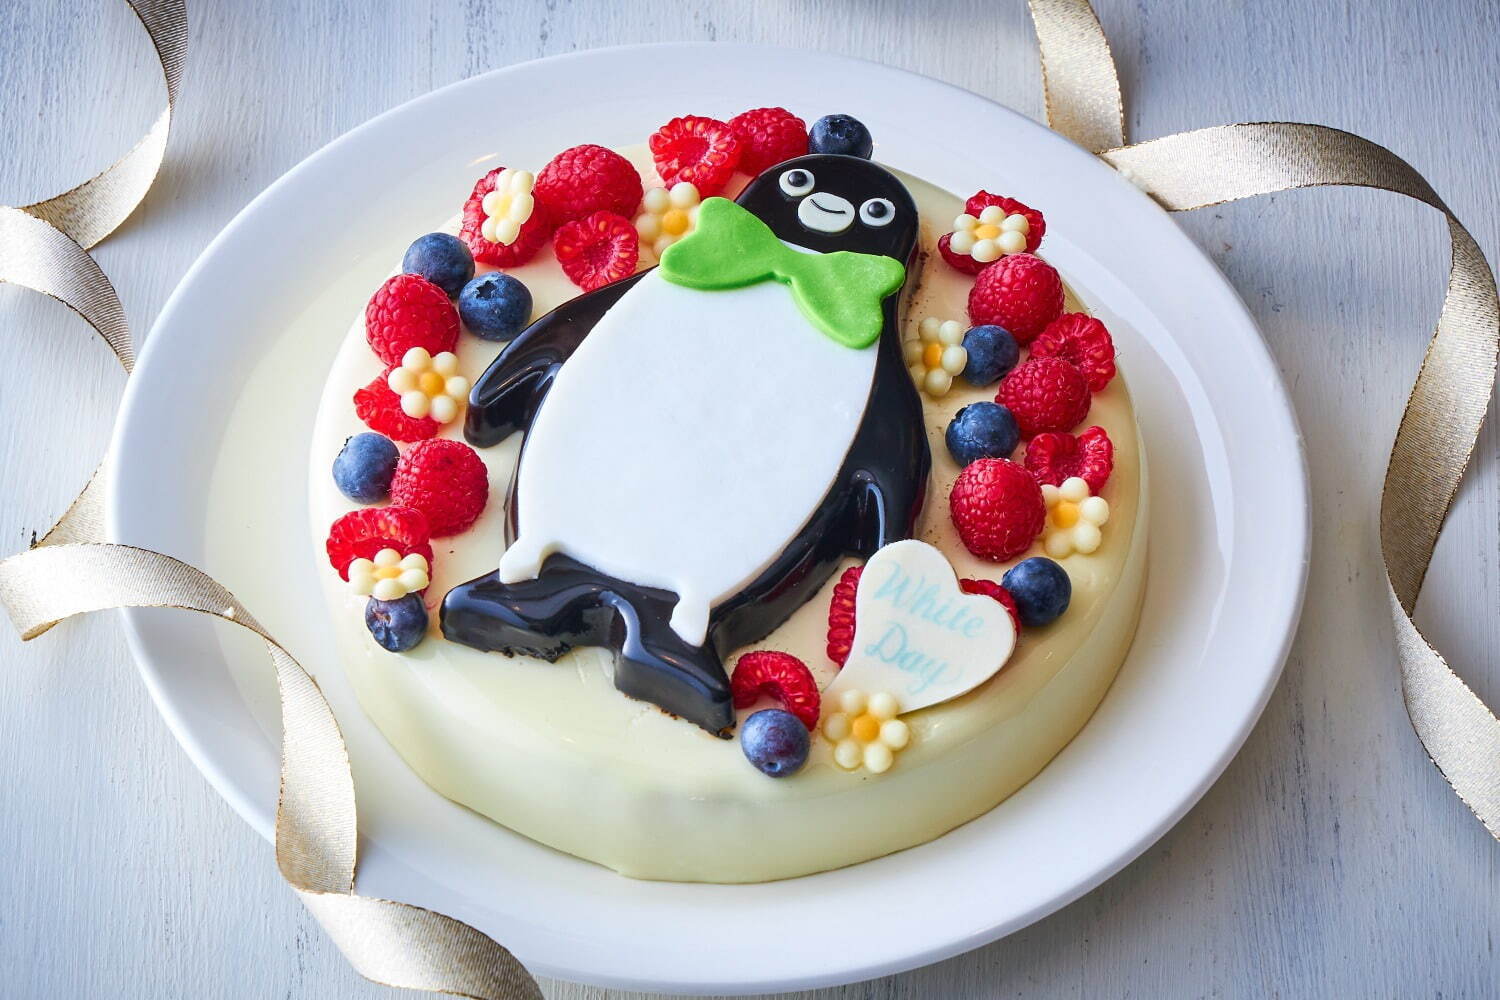 「Suicaのペンギン ホワイトデーケーキ」6,000円